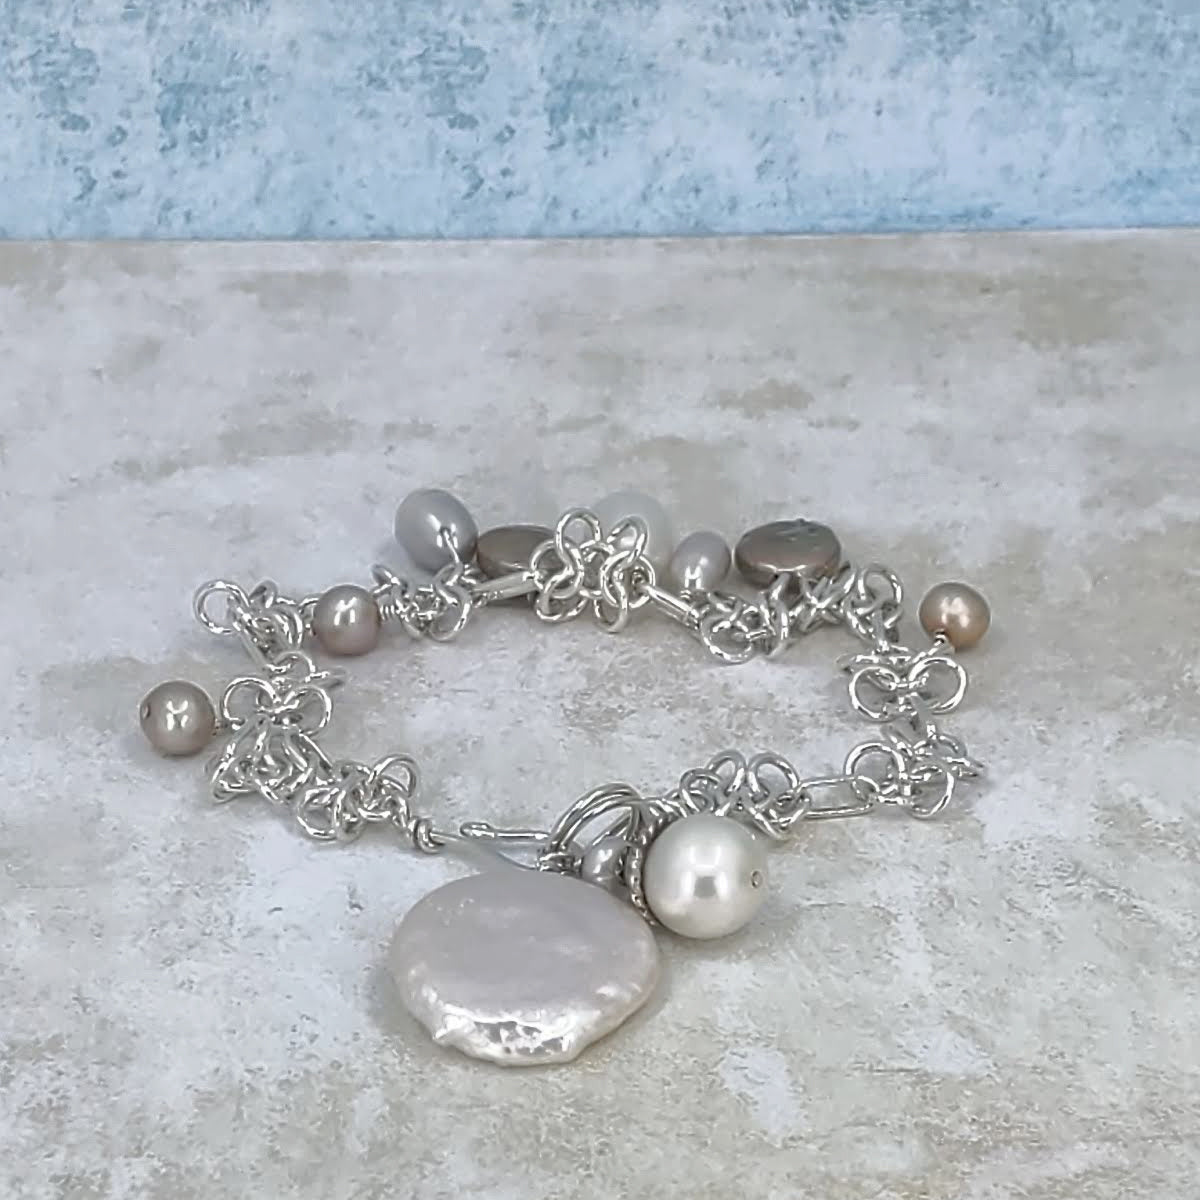 Pearls and Posies Bracelet